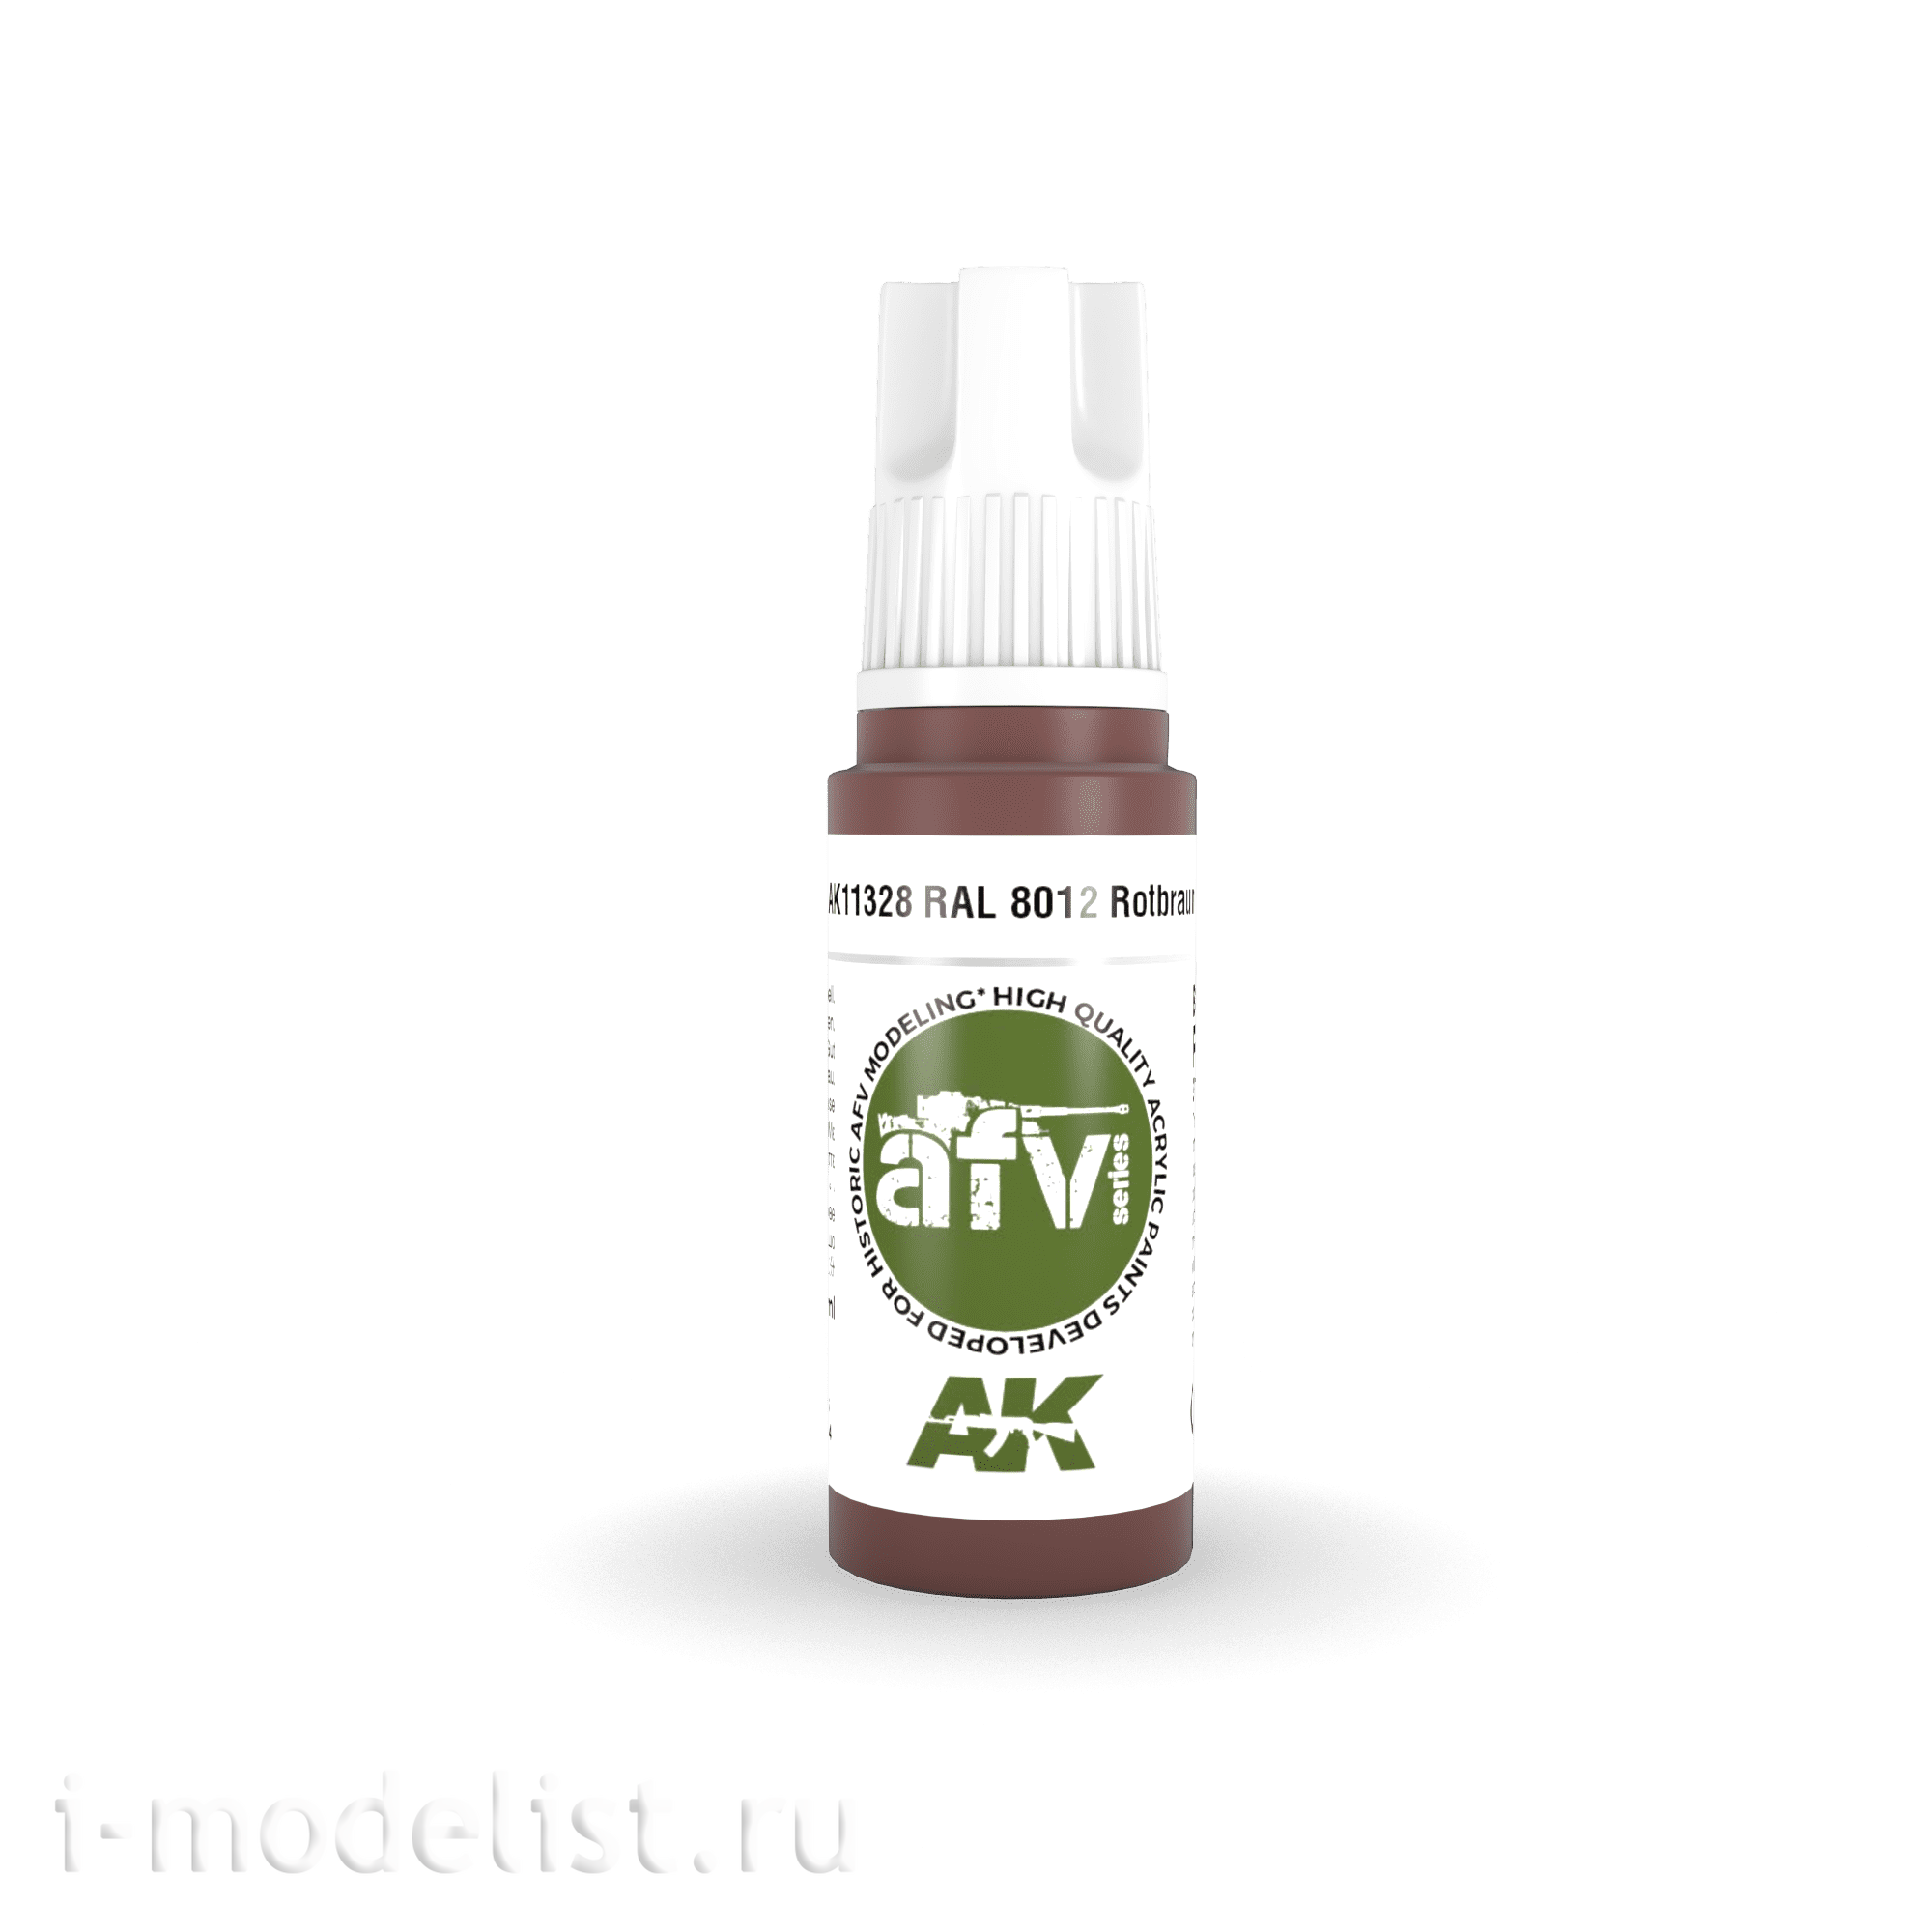 AK11328 AK Interactive acrylic paint 